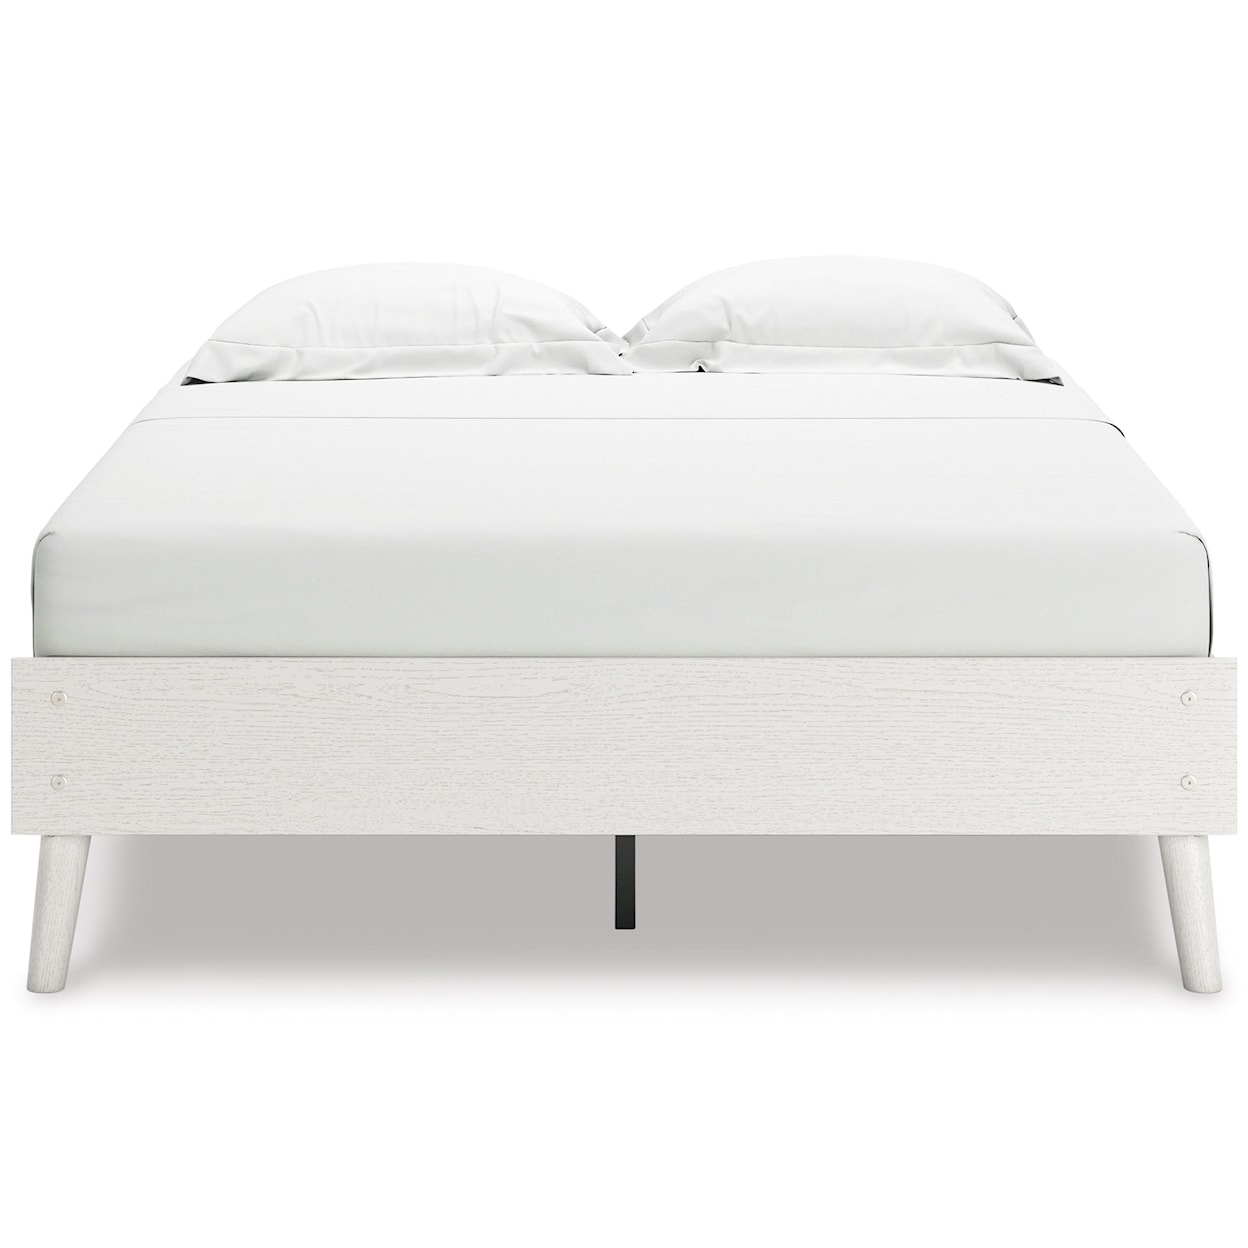 Ashley Furniture Signature Design Aprilyn Full Platform Bed